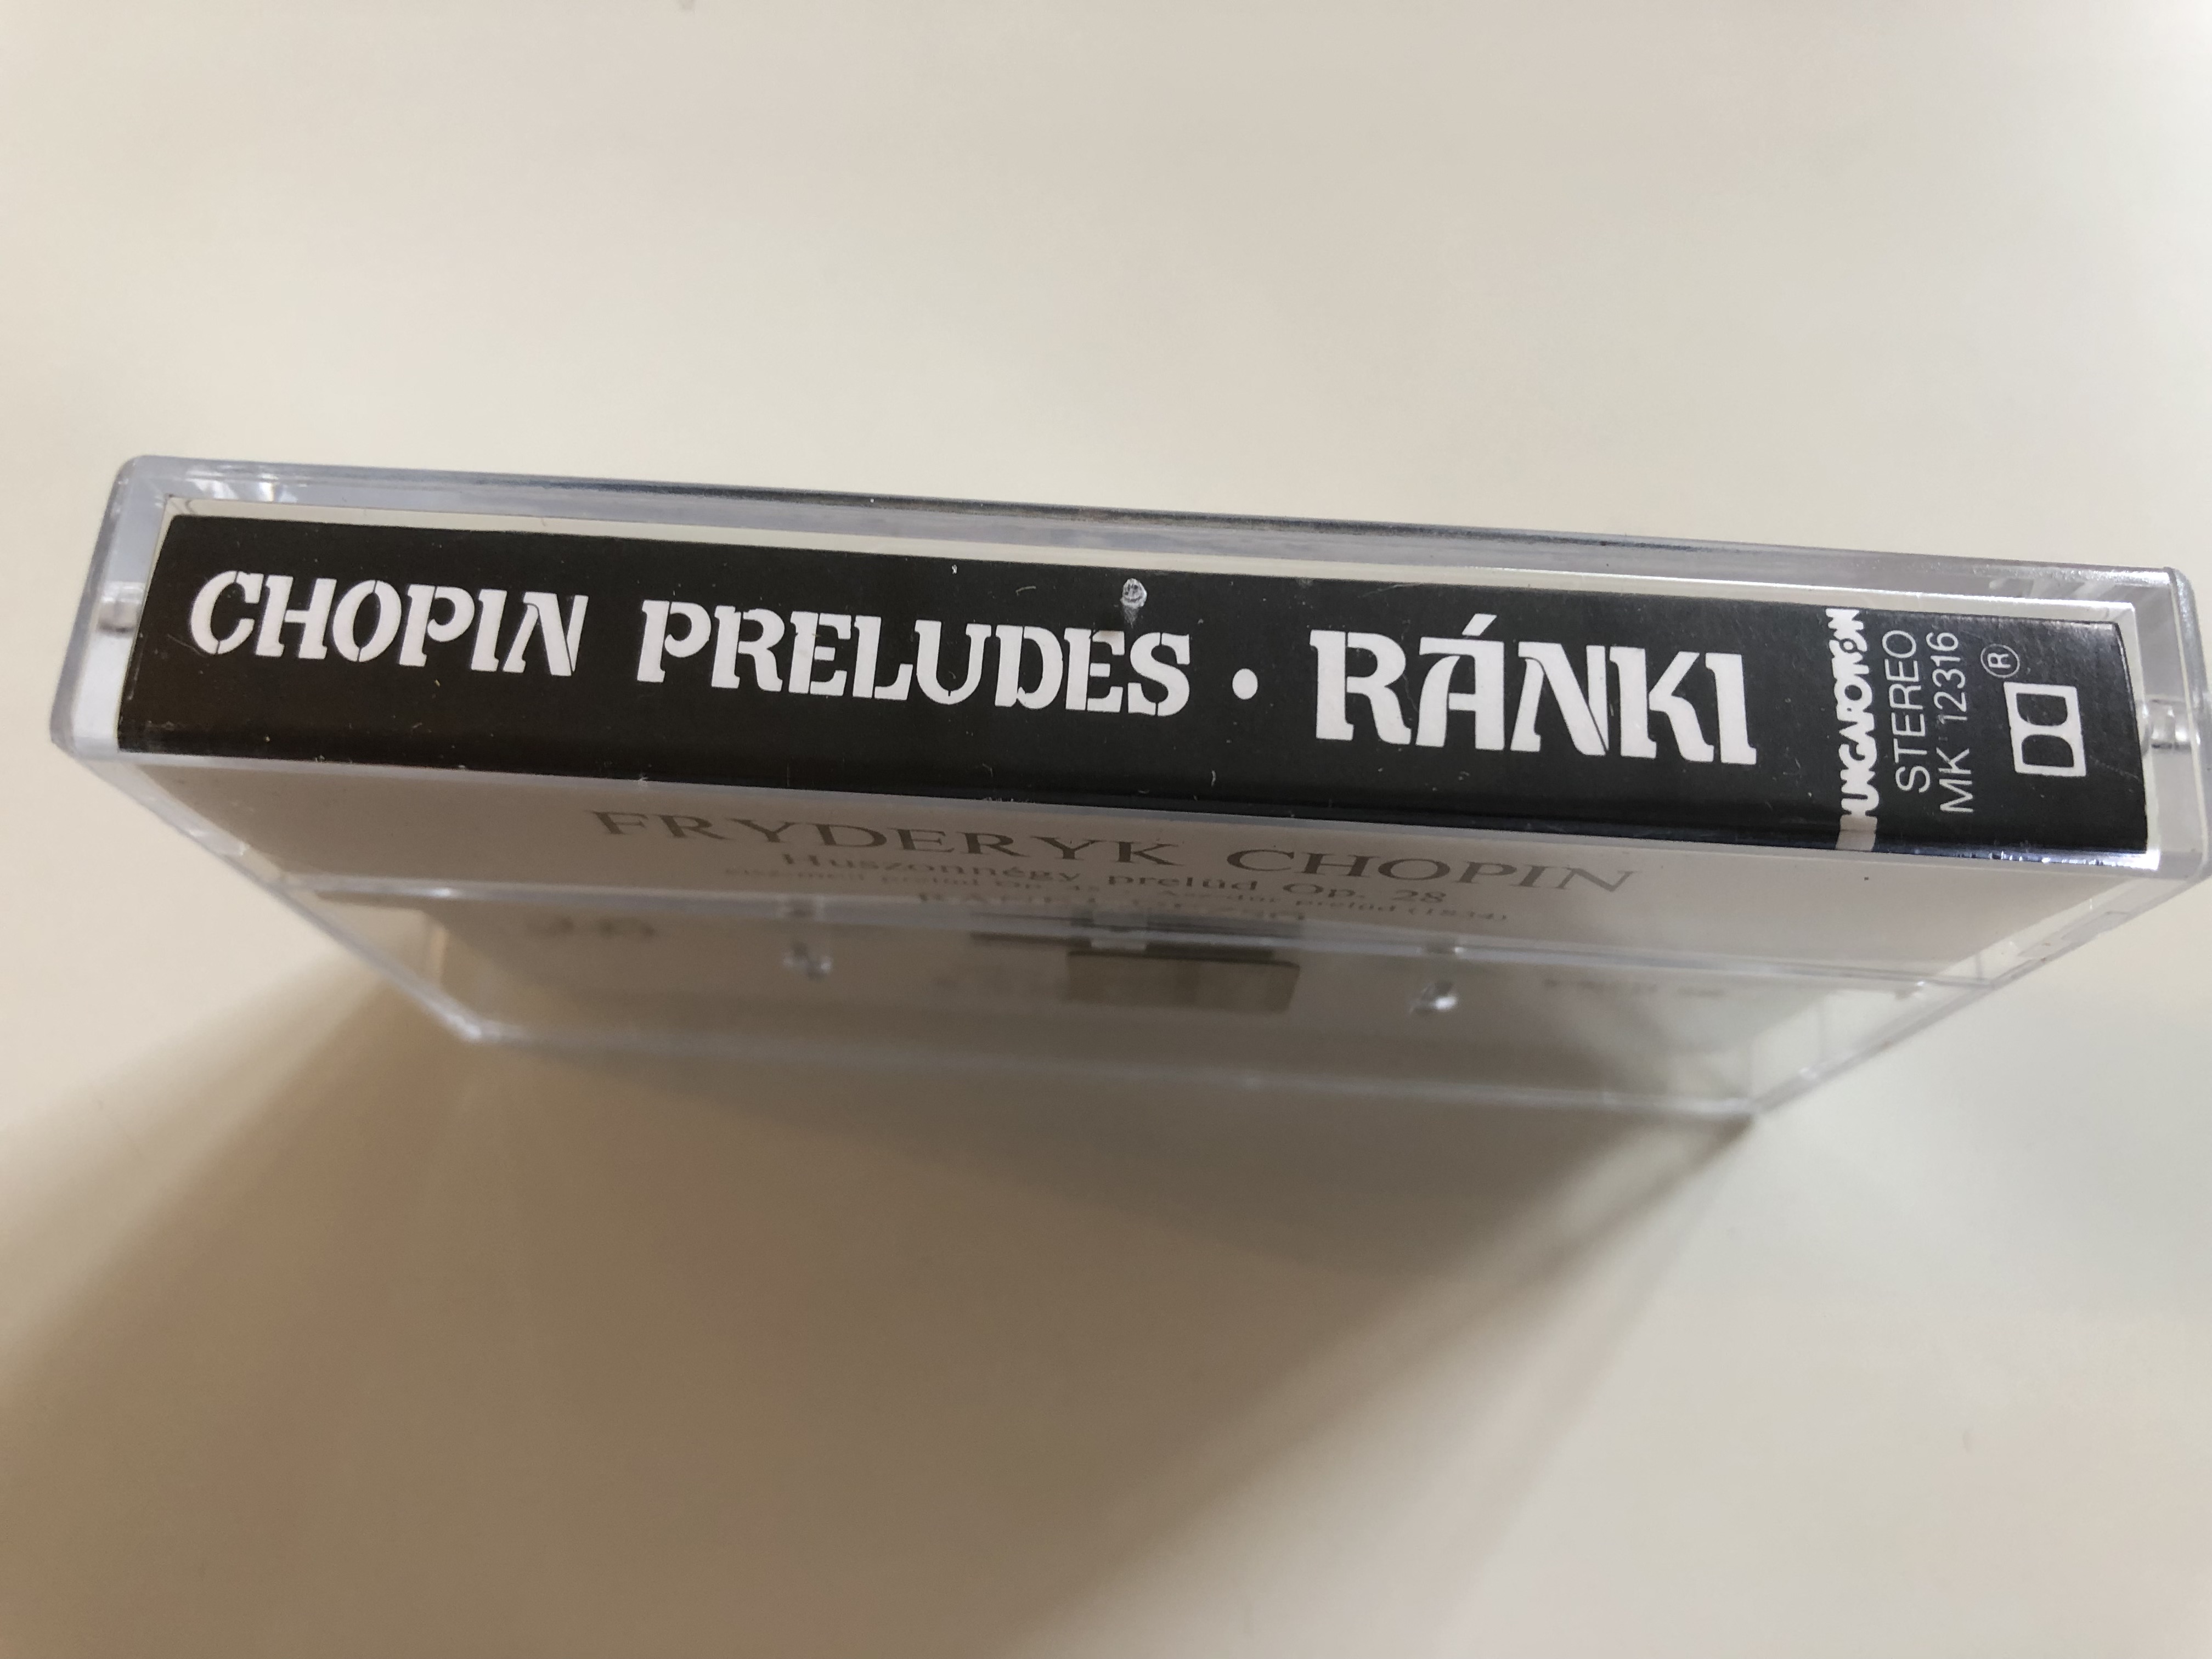 dezs-r-nki-chopin-preludes-hungaroton-cassette-stereo-mk-12316-4-.jpg